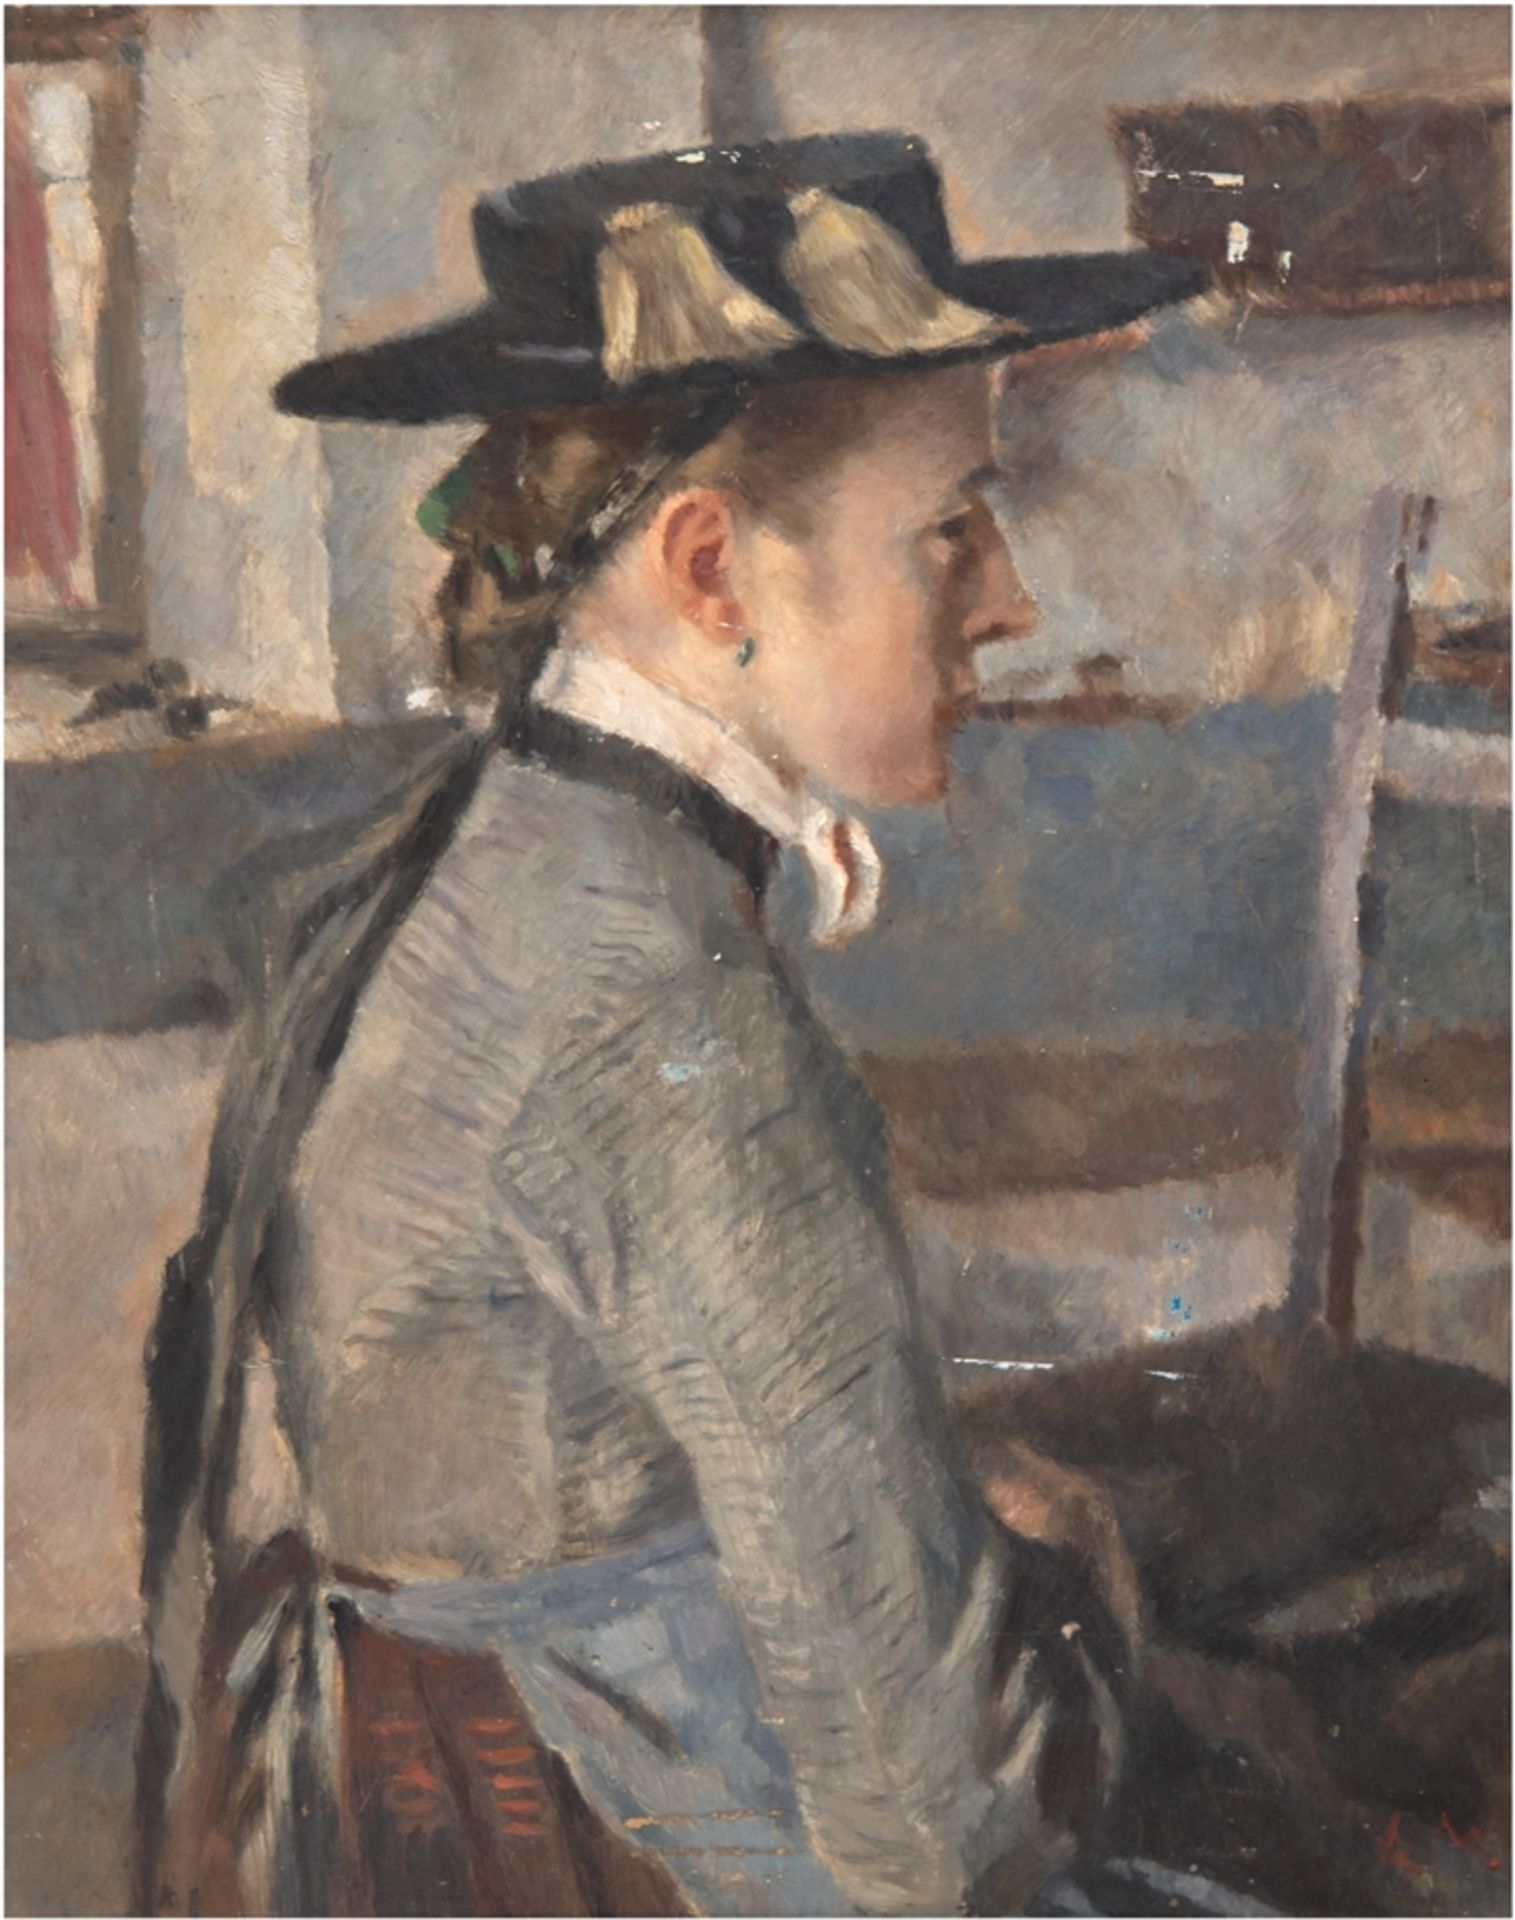 Monogrammist L.W. (süddeutscher Künstler, wahrscheinlich Linde-Walther) "Porträt einer Frau mit Hut